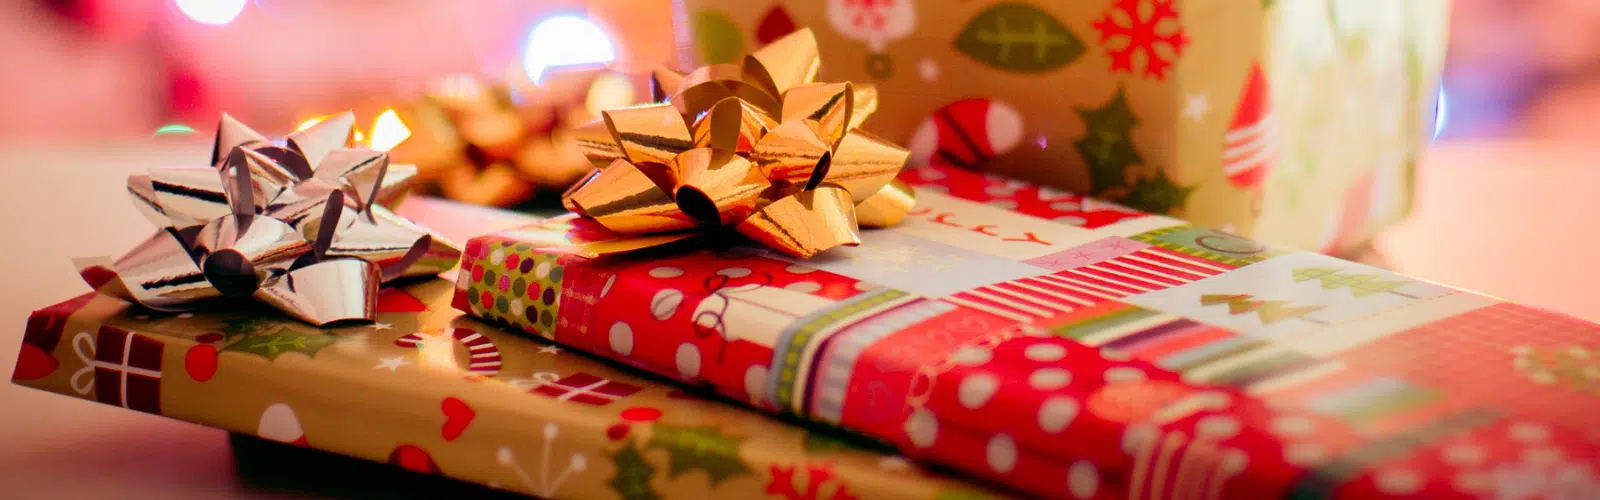 Cadeaux de Noël : 11 jeux et jouets tendances à offrir cette année !